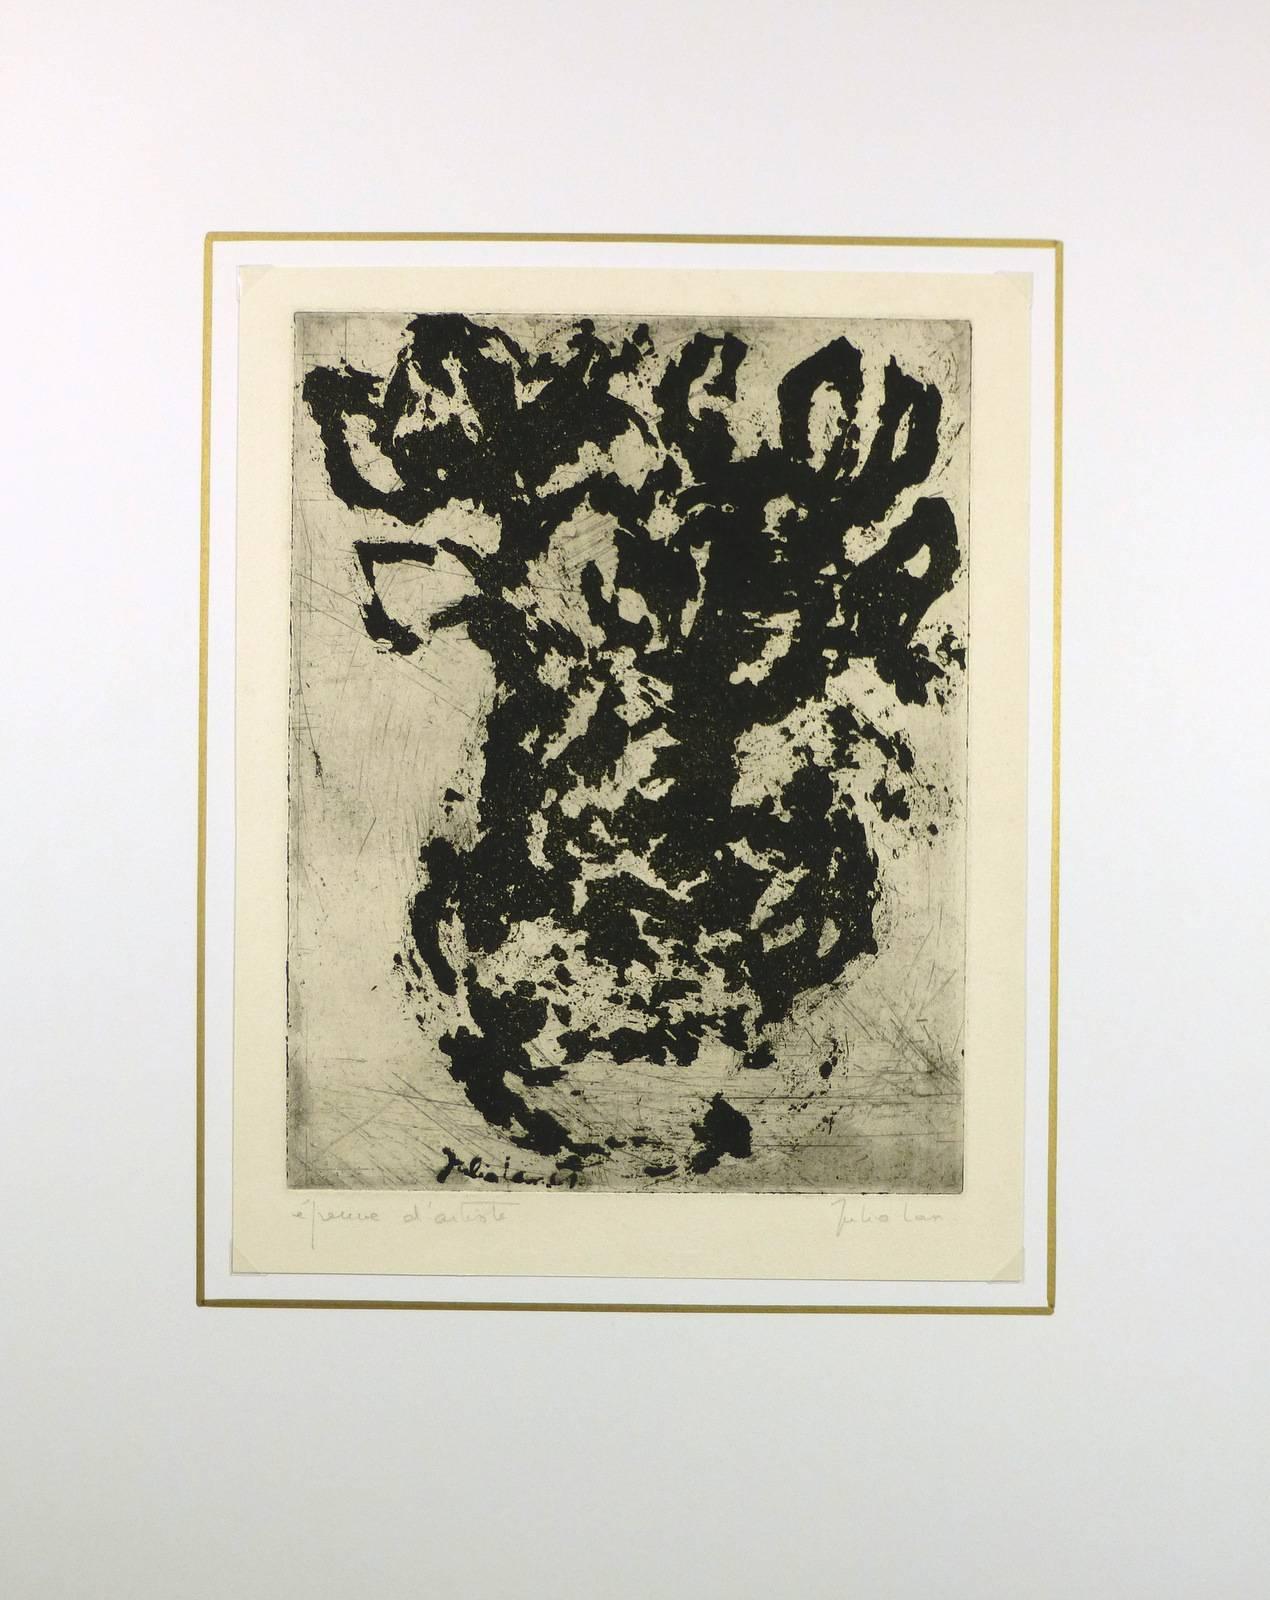 Dynamische französische abstrakte Radierung in Schwarz und Grau der Künstlerin Julia Lan, um 1980. Signiert unten rechts.  

Originalkunstwerk auf Papier auf einem weißen Passepartout mit Goldrand. Die Matte passt in einen Rahmen in Standardgröße. 